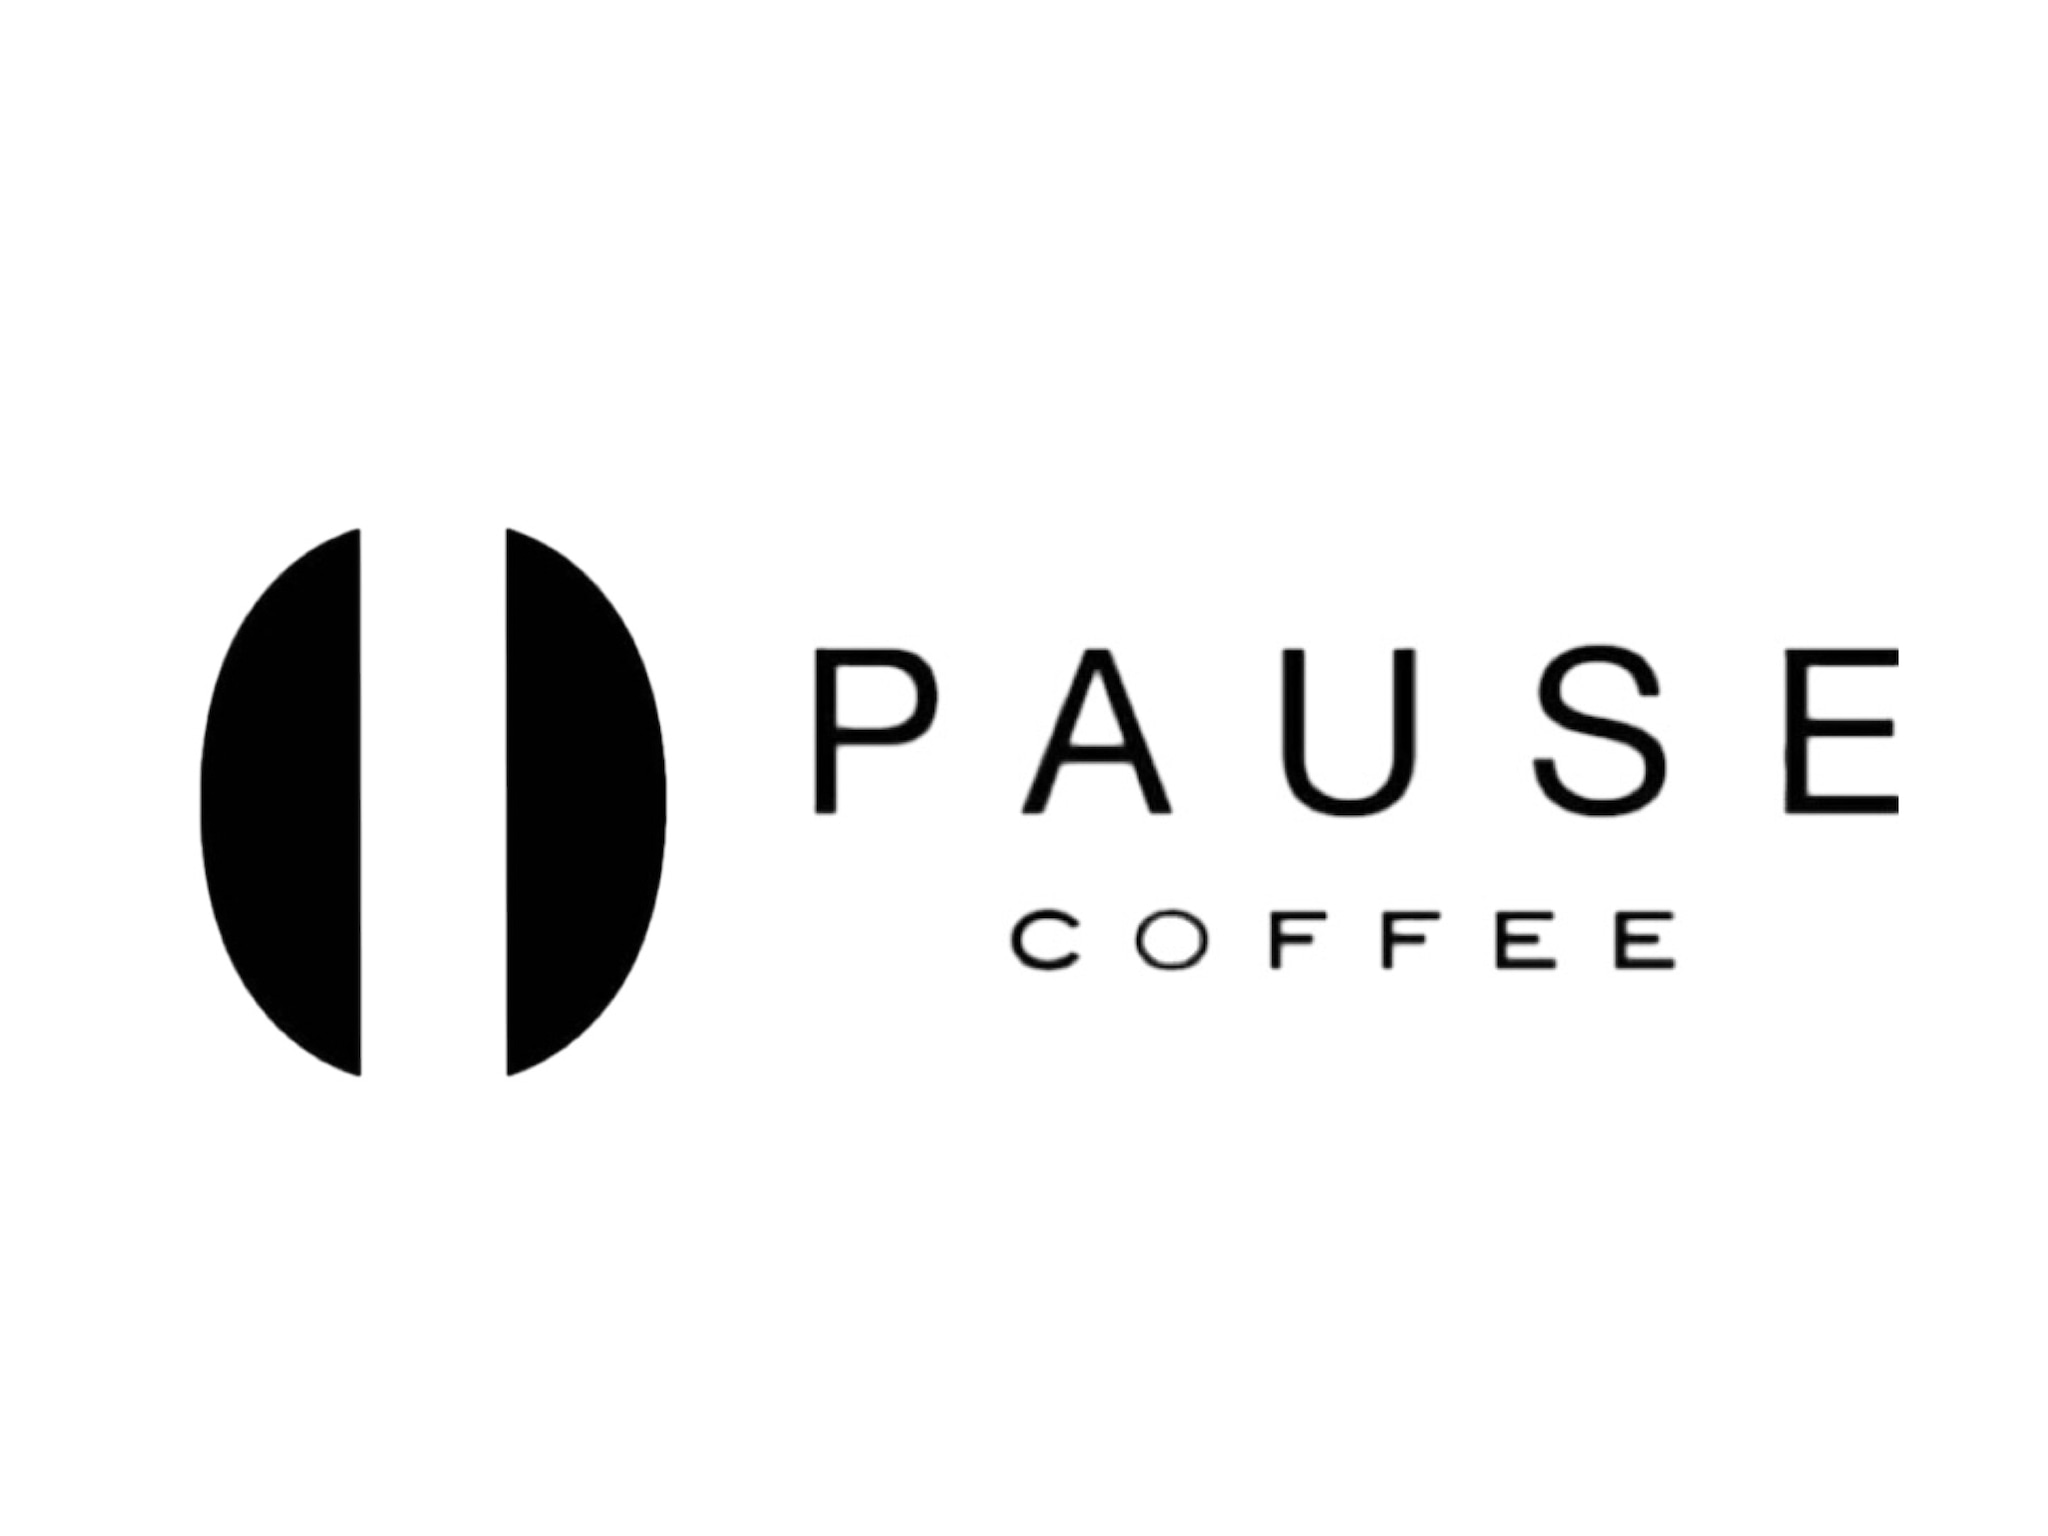 PAUSE COFFEE